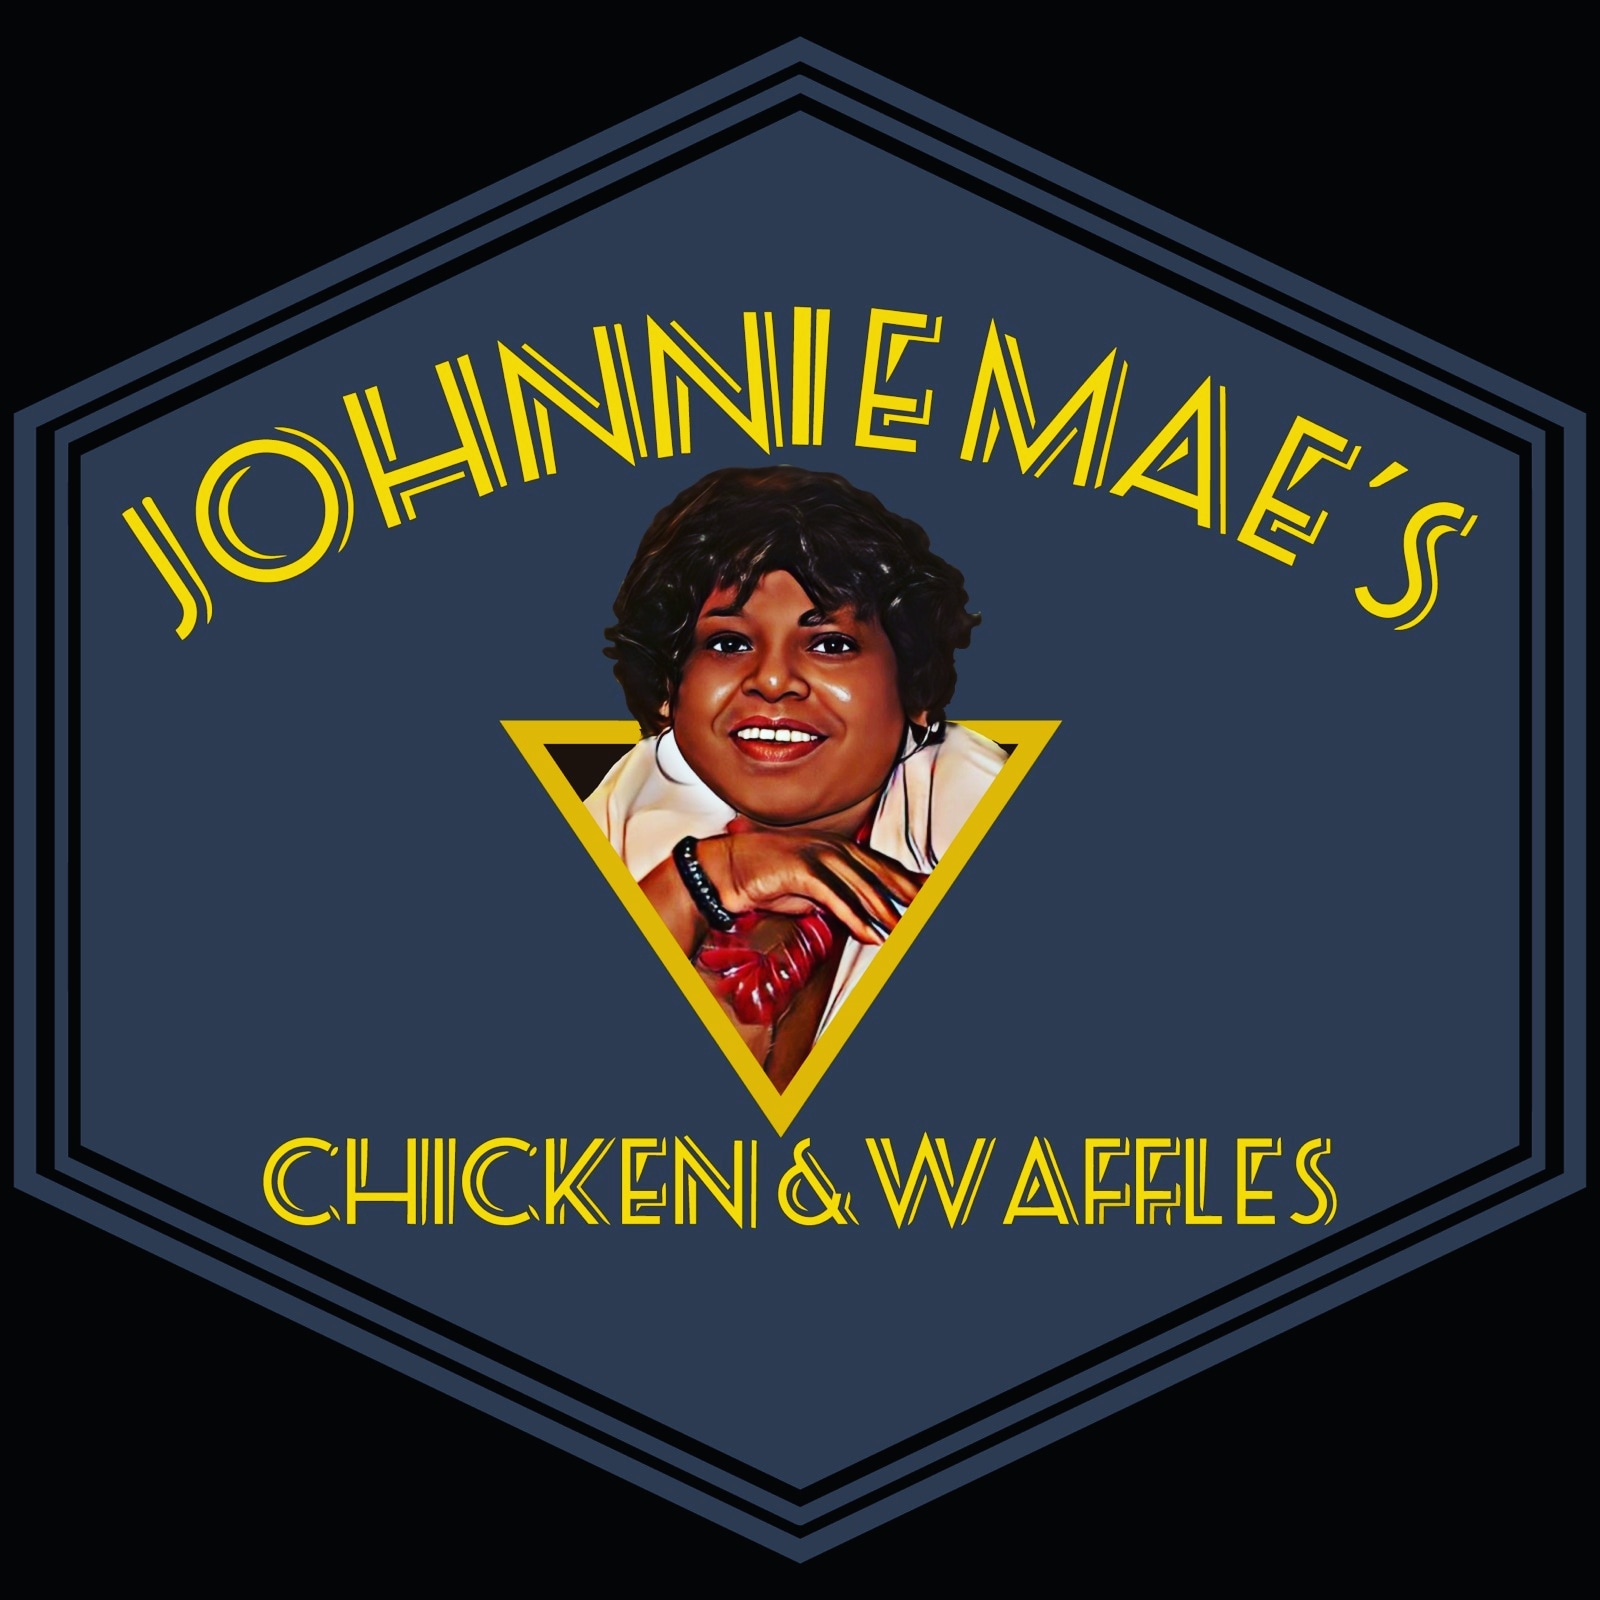 Johnnie Mae's Chicken & Waffles